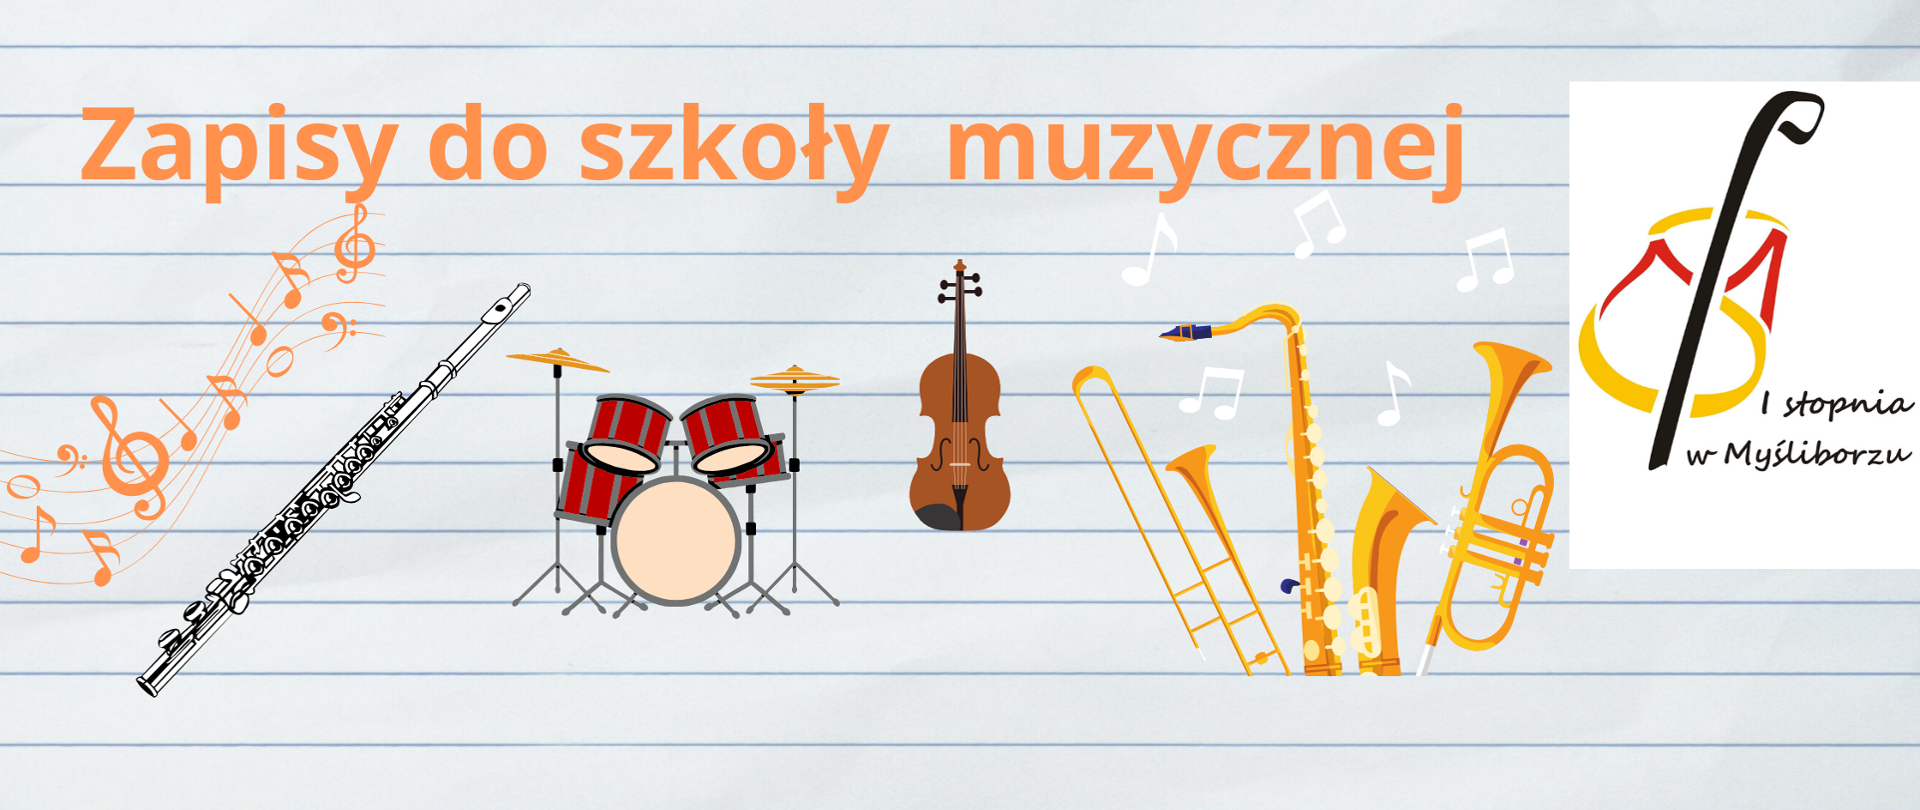 Na jasnym tle tekst : zapisy do szkoły, pod tekstem nuty oraz instrumenty muzyczne, po prawej stronie logo szkoły.